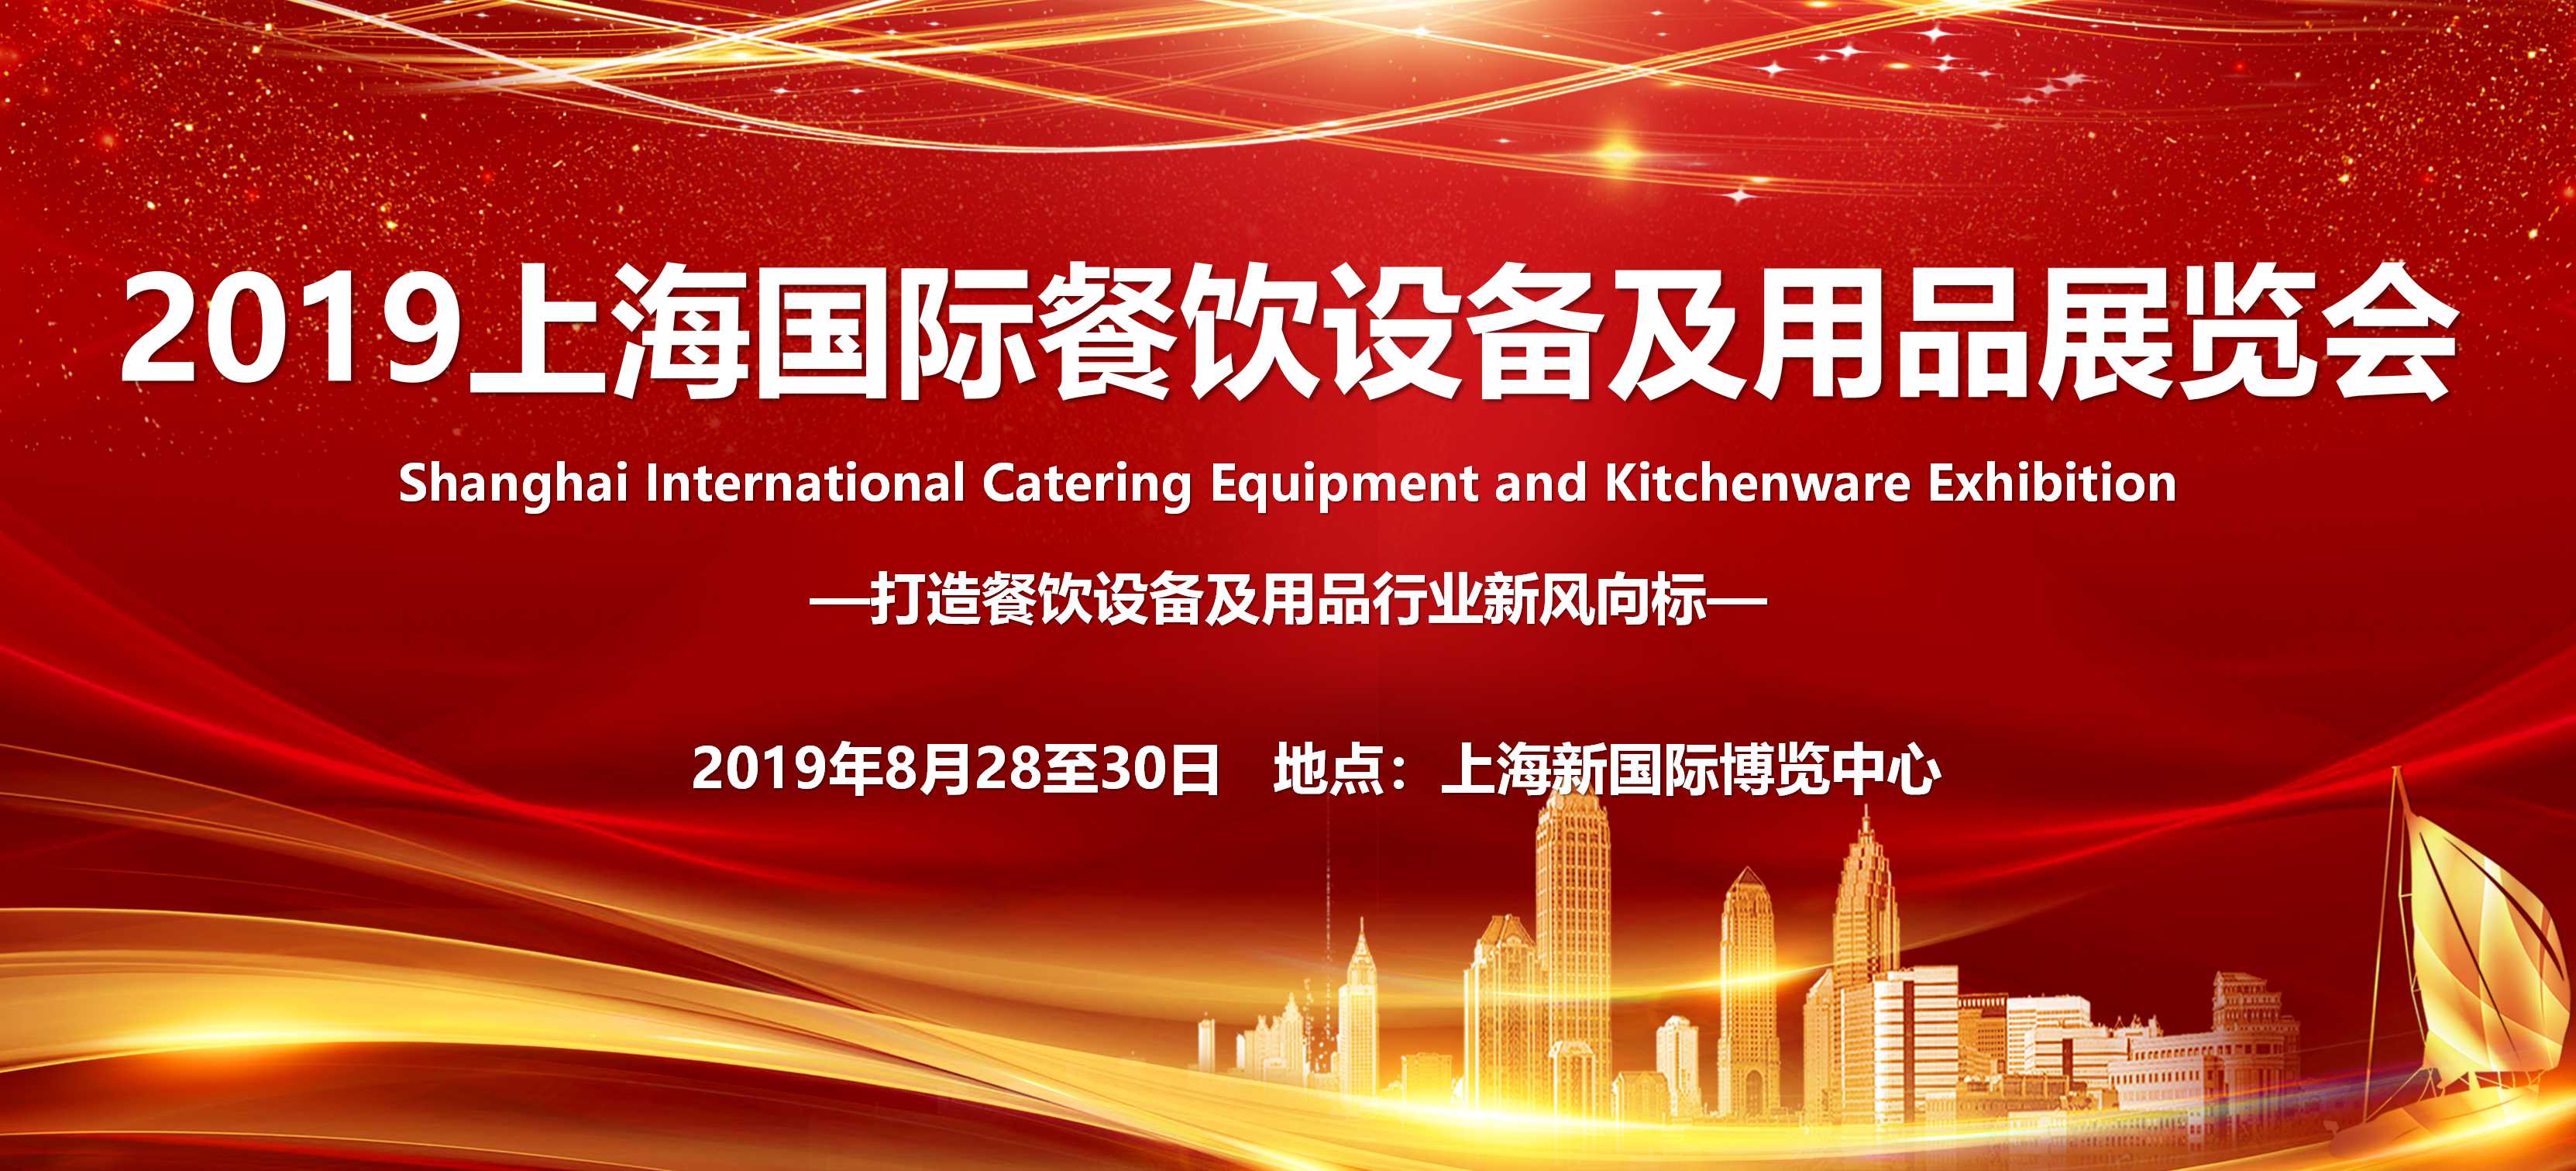 2019上海國際餐飲設備及用品展覽會